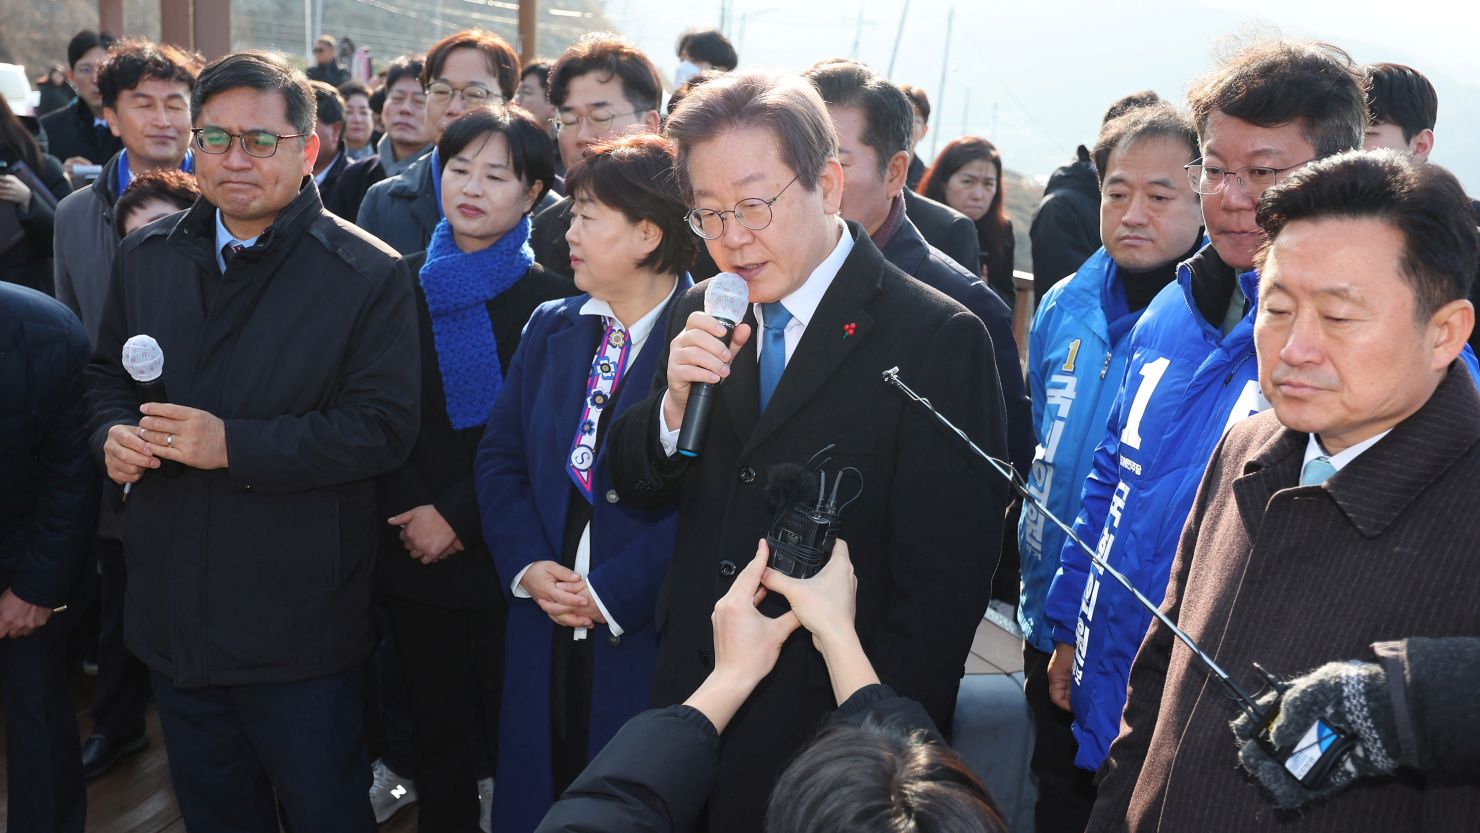 दक्षिण कोरियाका विपक्षी नेता जे–म्युङमाथि पत्रकार सम्मेलनमा छुरा प्रहार